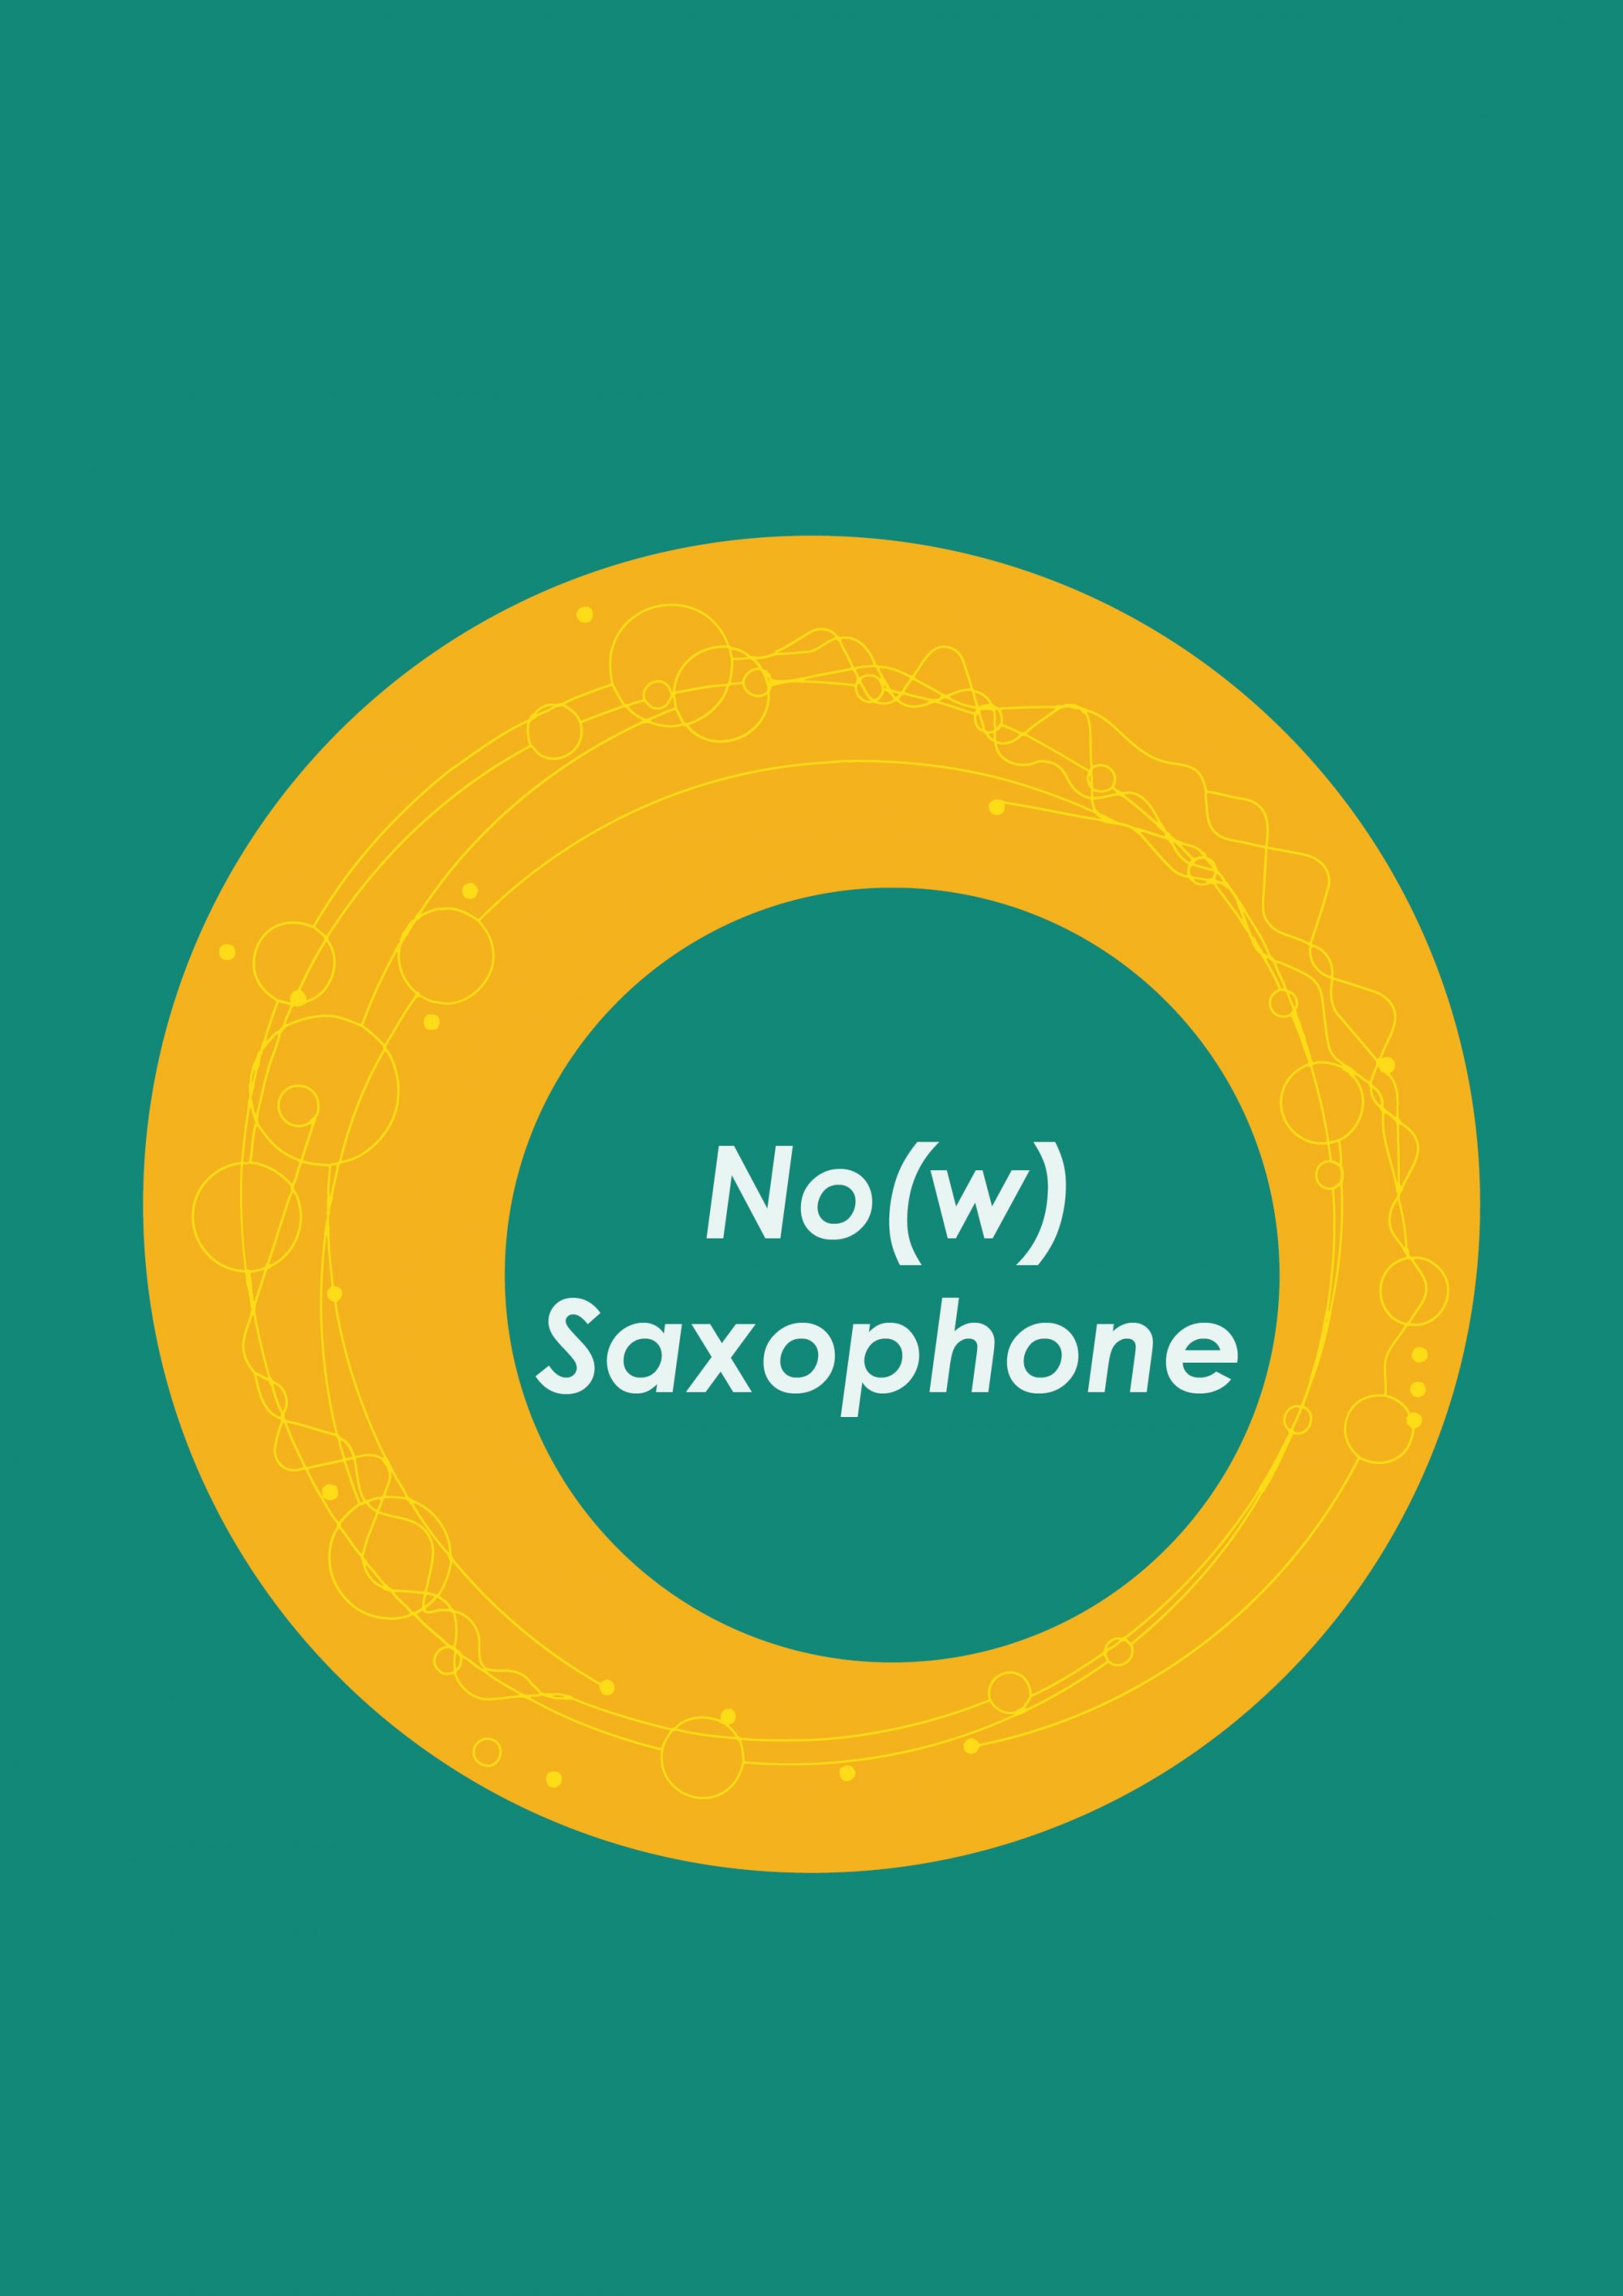 'No(w) Saxophone' 1